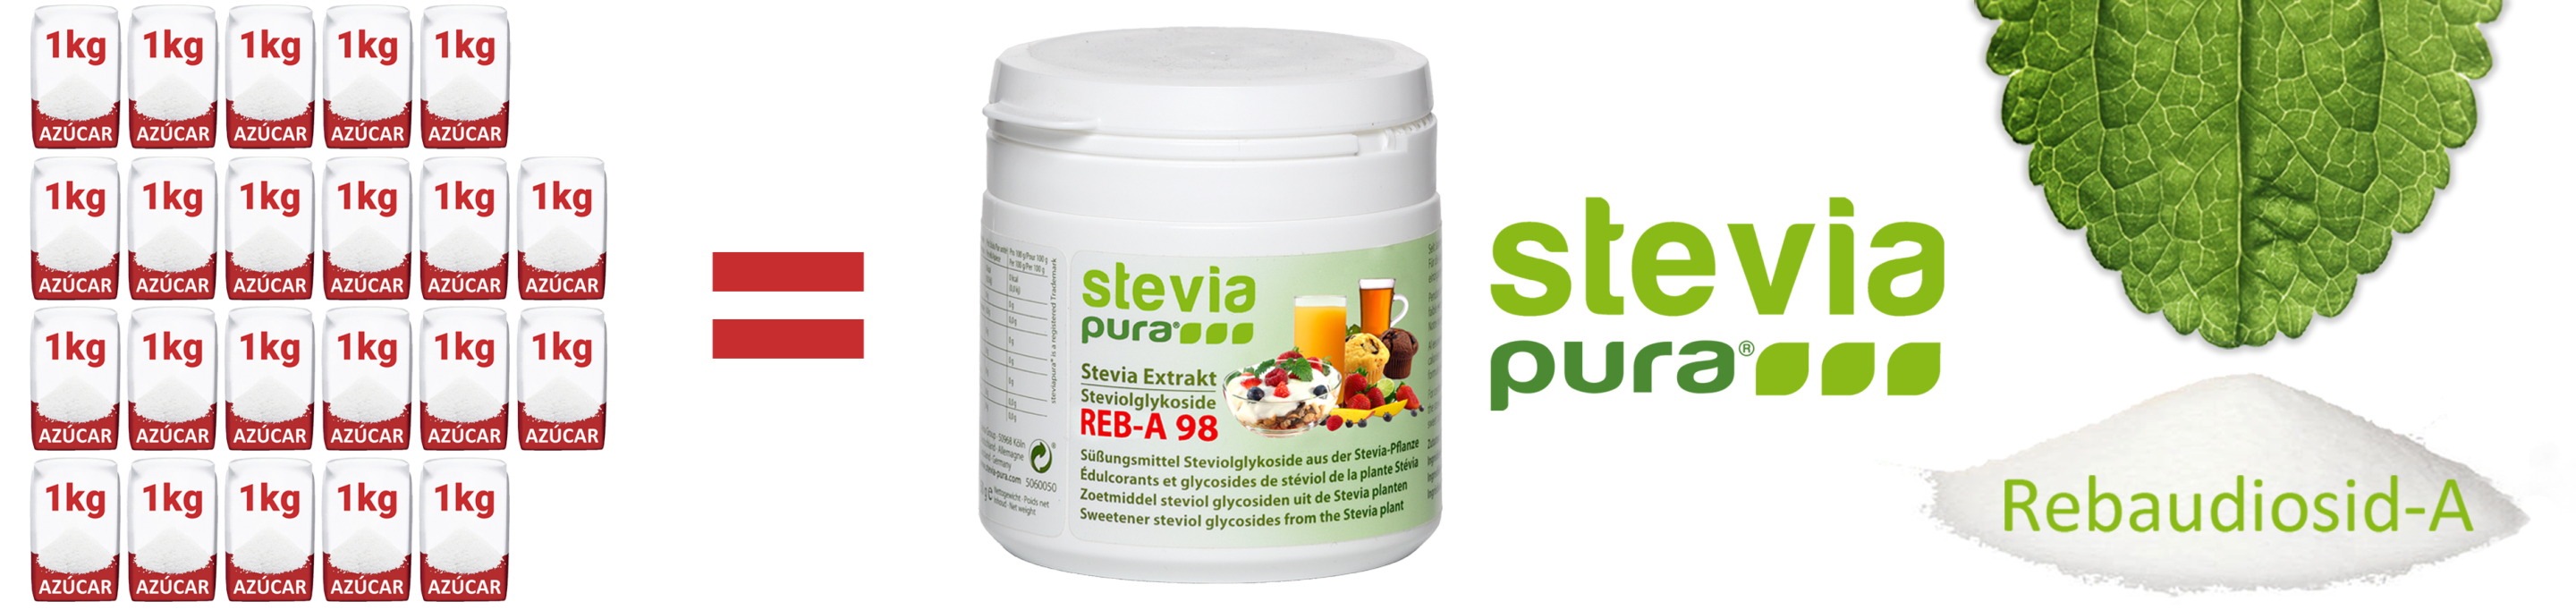 Stevia pura en polvo Rebaudioside-A 98% Extracto puro de...